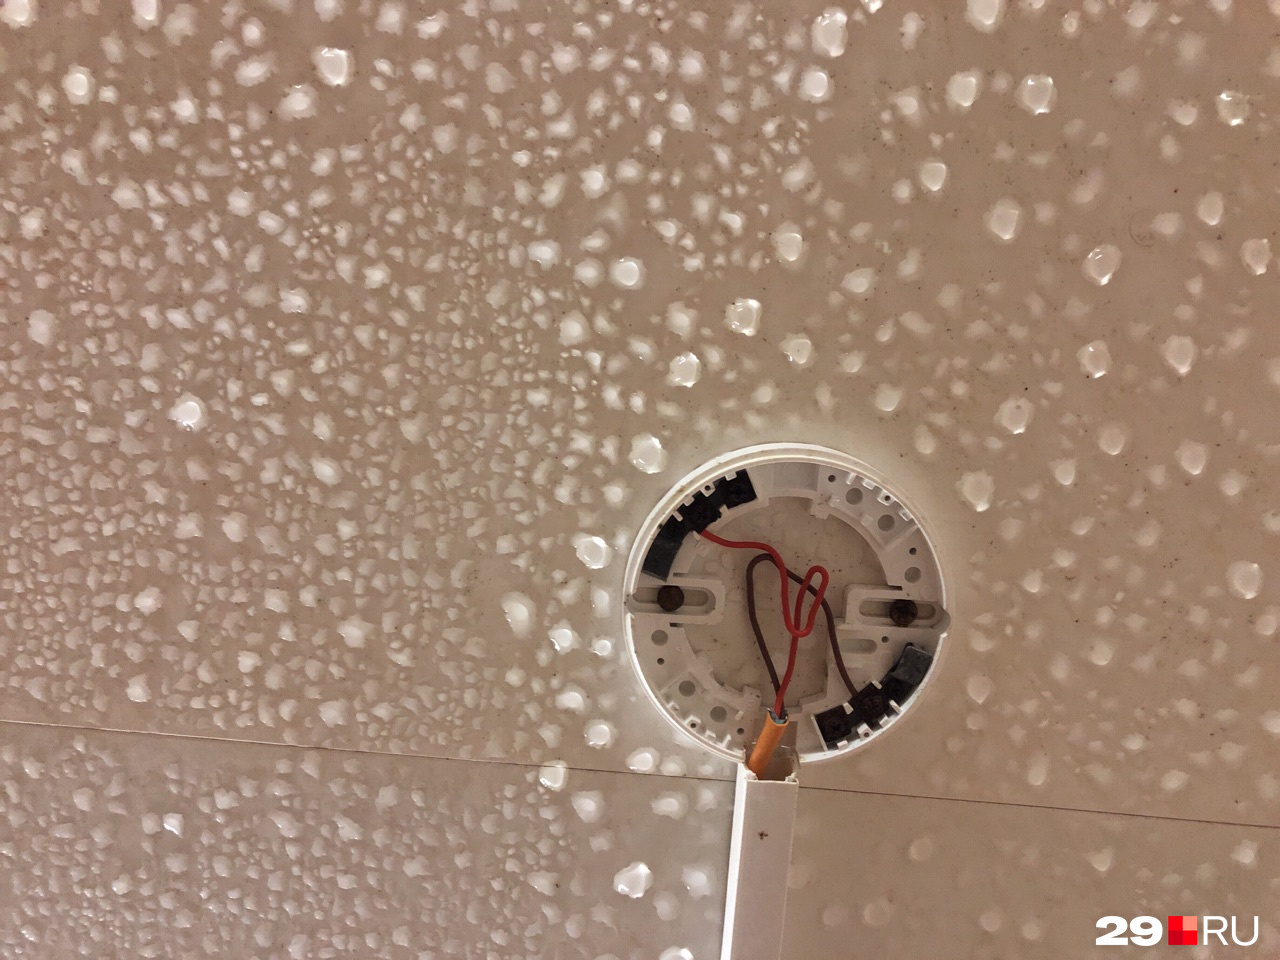 На месте лампочки — провода, на потолке скапливается влага